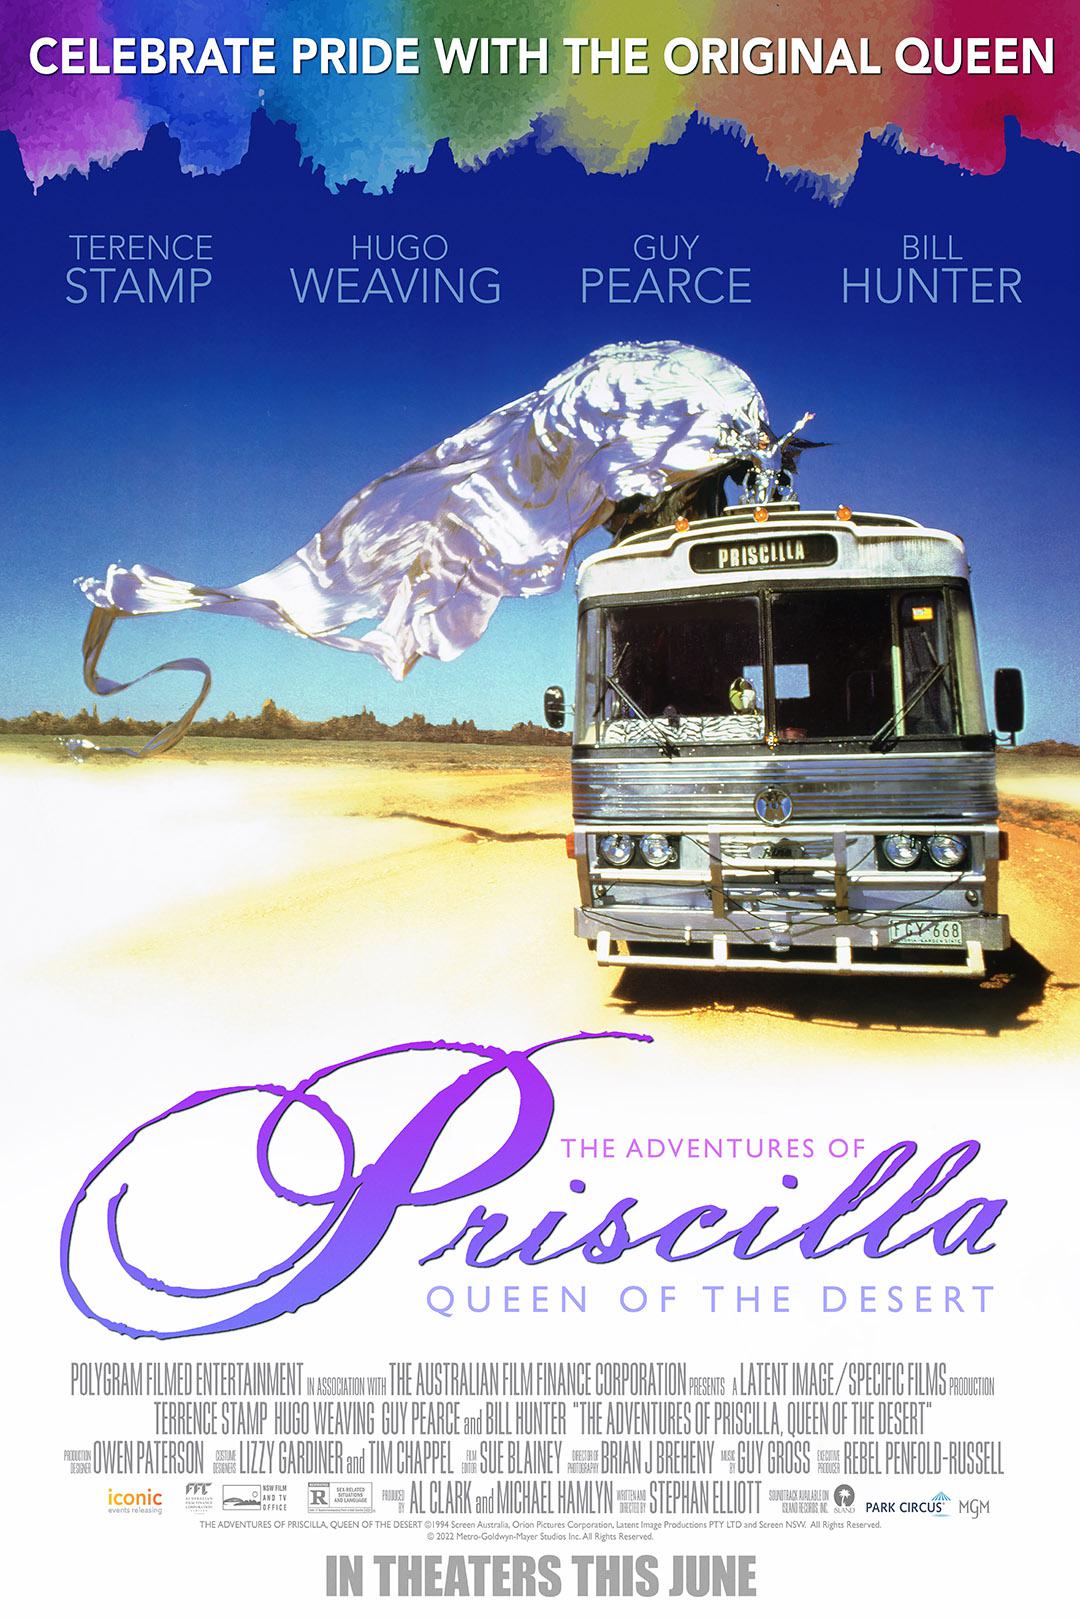 Hugo Weaving in The Adventures of Priscilla, Queen of the Desert